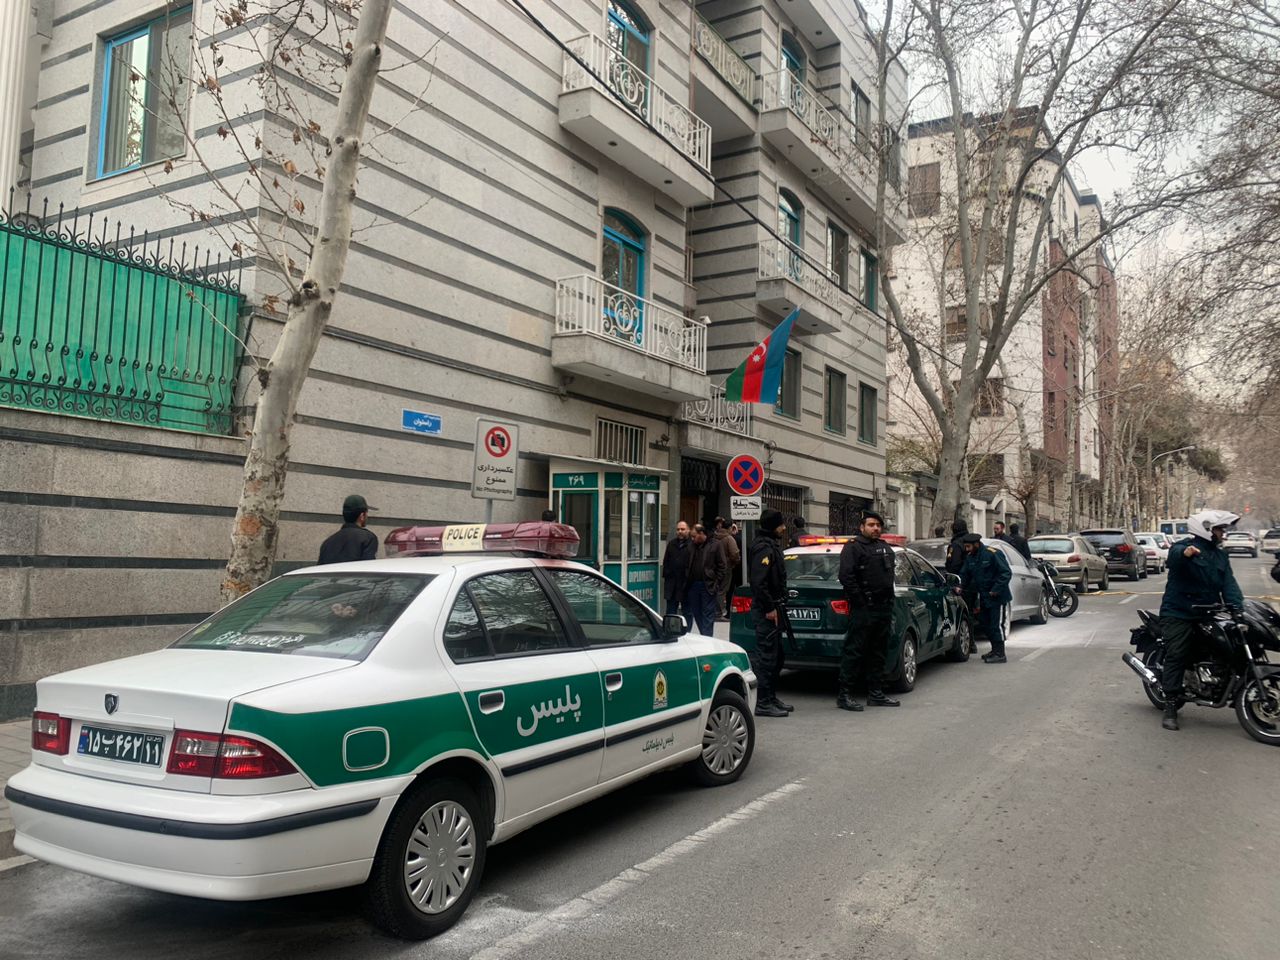 Sparatoria di fronte all’ambasciata azerbaigiana a Teheran, 1 morto e 2 feriti